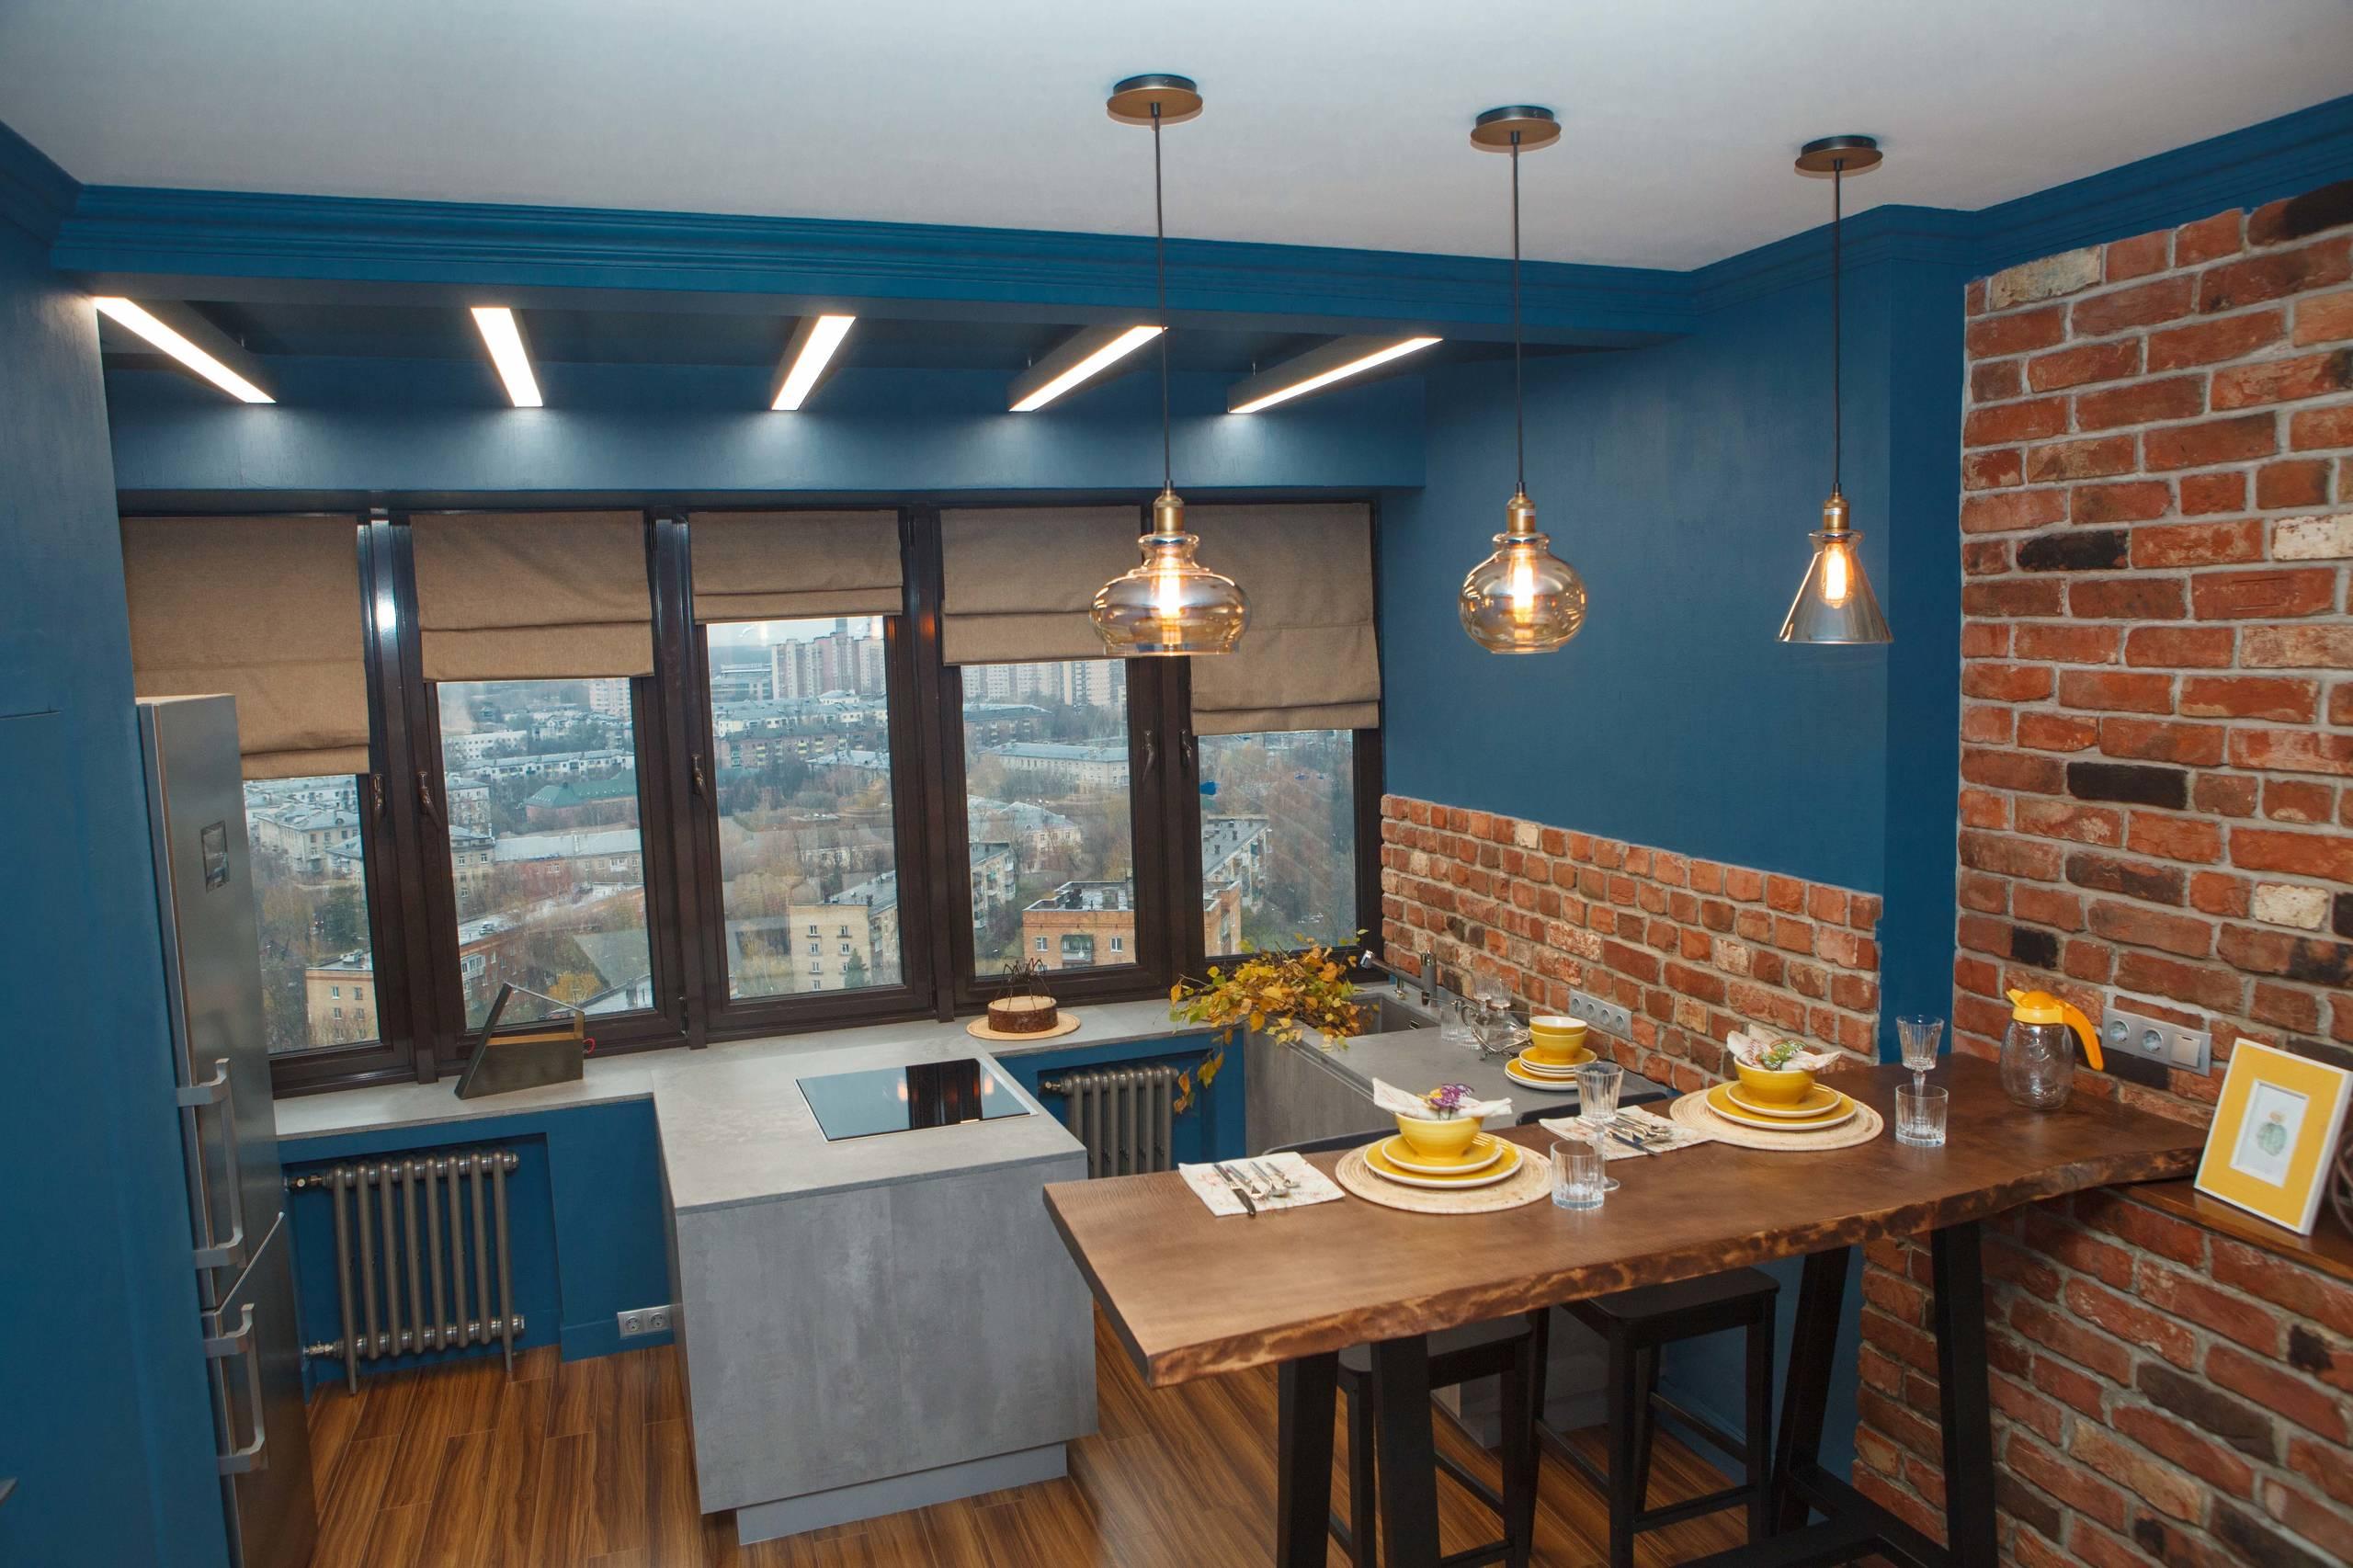 Интерьер кухни cветильниками над столом, подсветкой настенной и подсветкой светодиодной